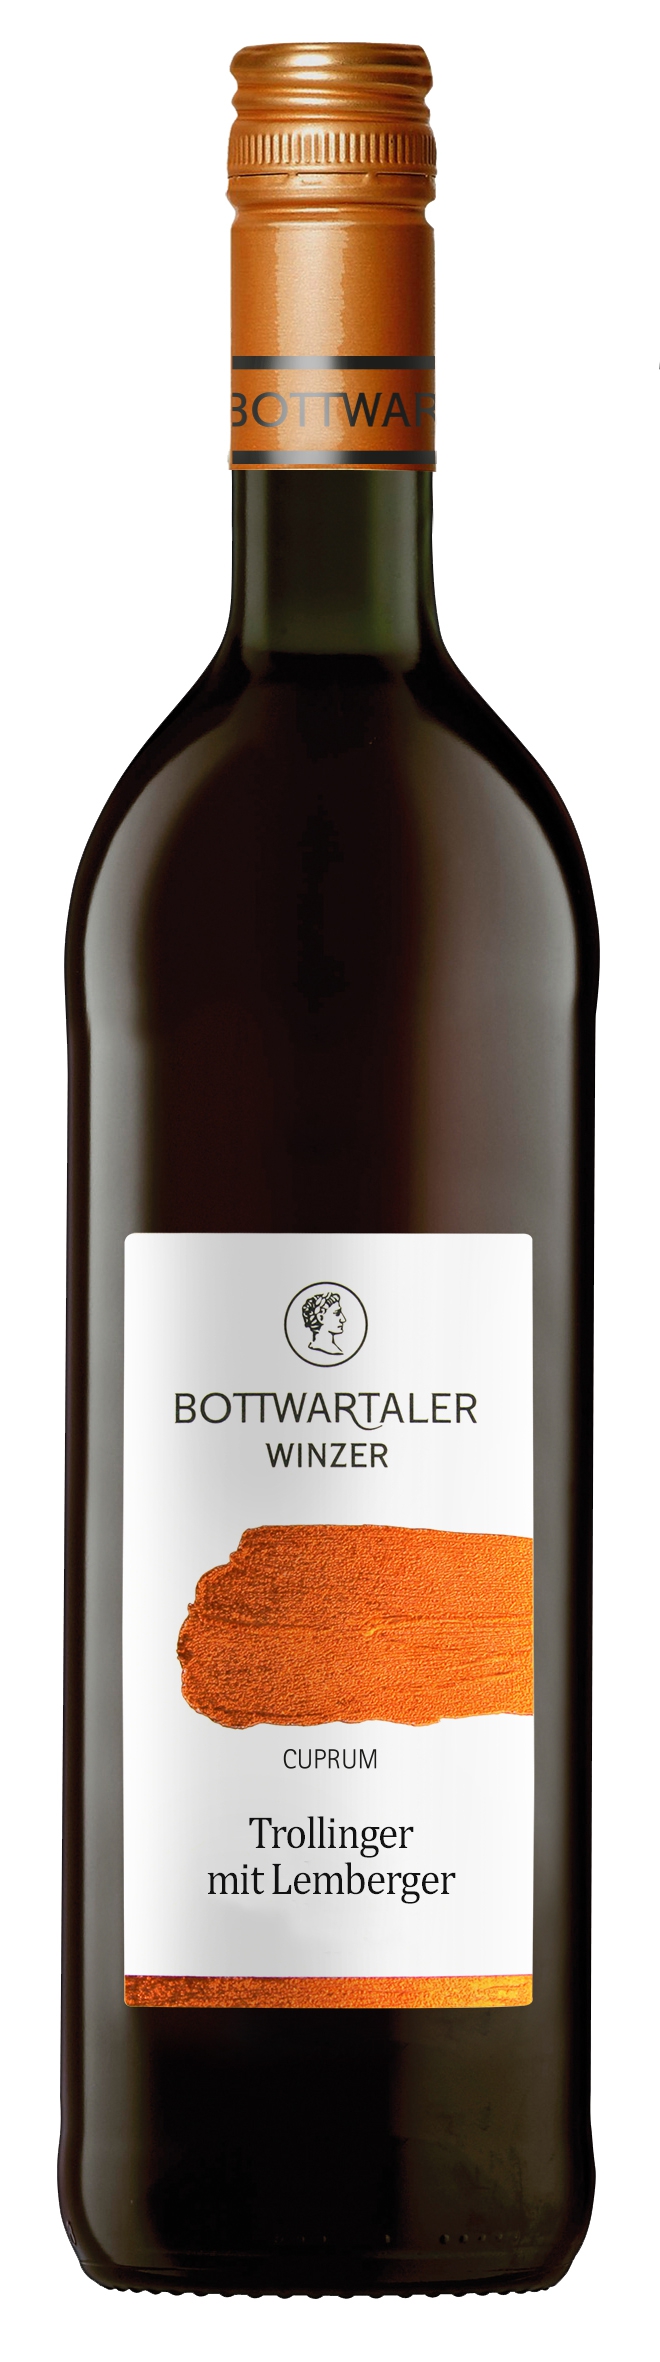 Wartberg Beilsteiner 2021 Bottwartaler Lemberger Kupfer halbtrocken mit Trollinger / Winzer - Wein kaufen günstig